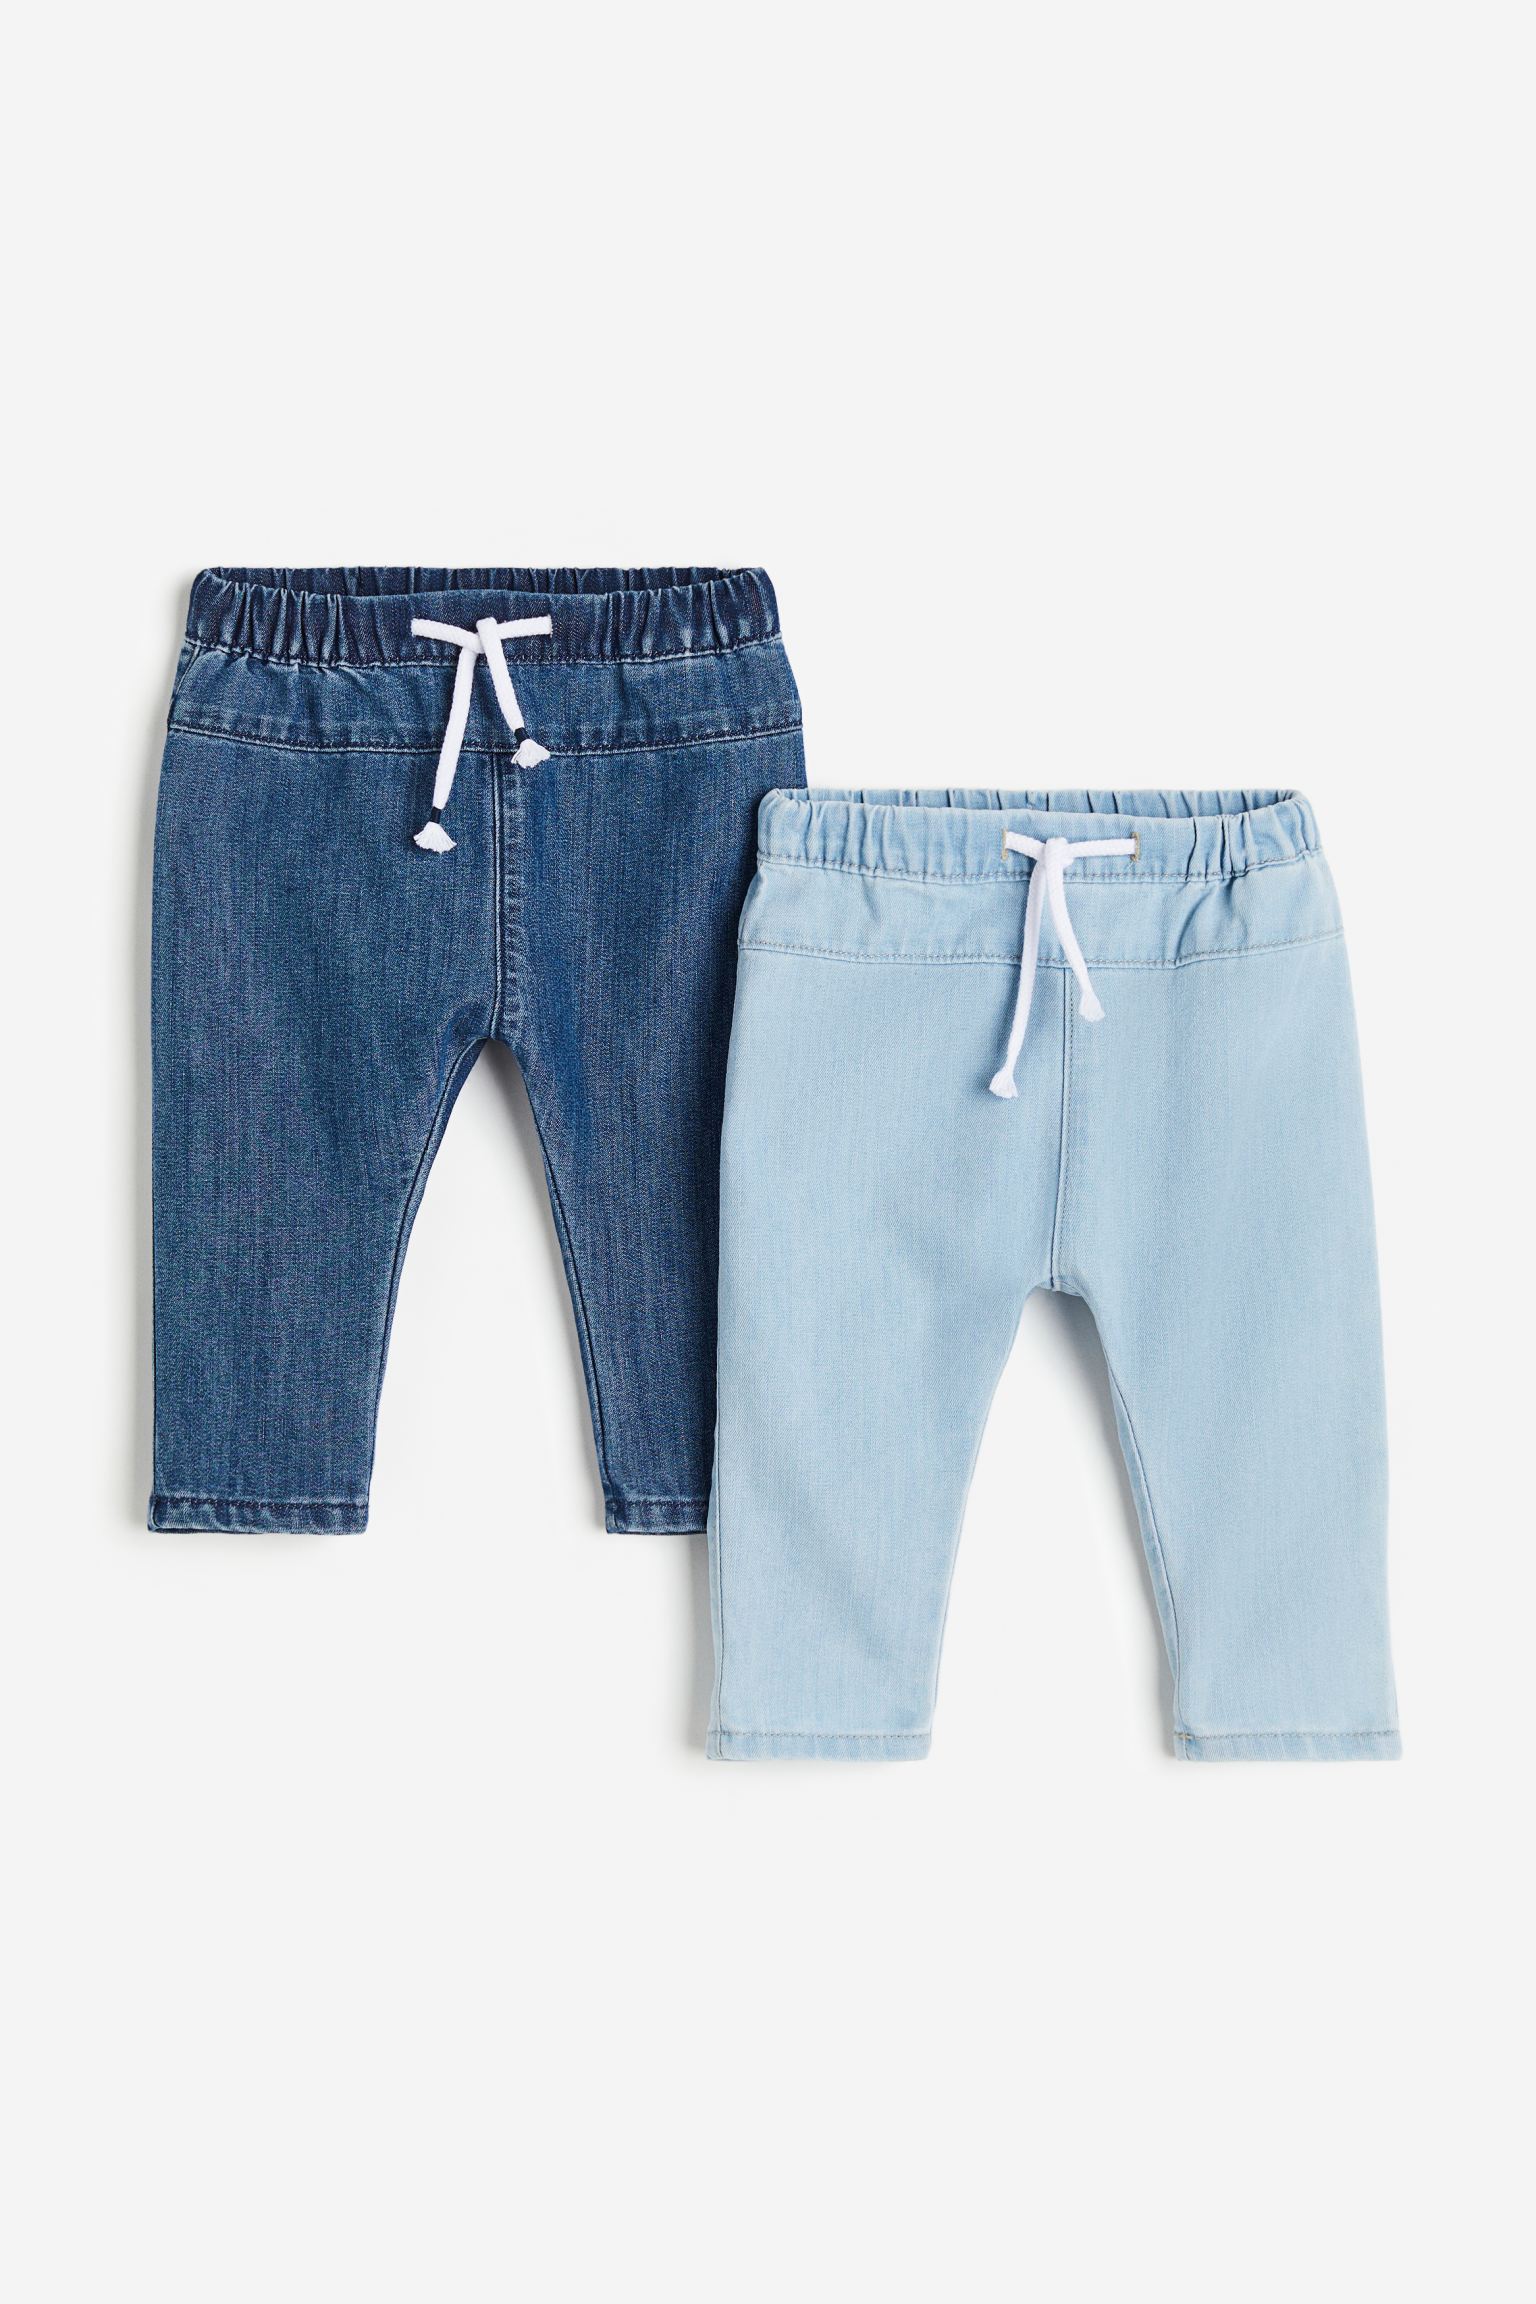 2 пары зауженных джинсов H&M для мальчиков 68 Синий/Голубой (доставка из-за рубежа)